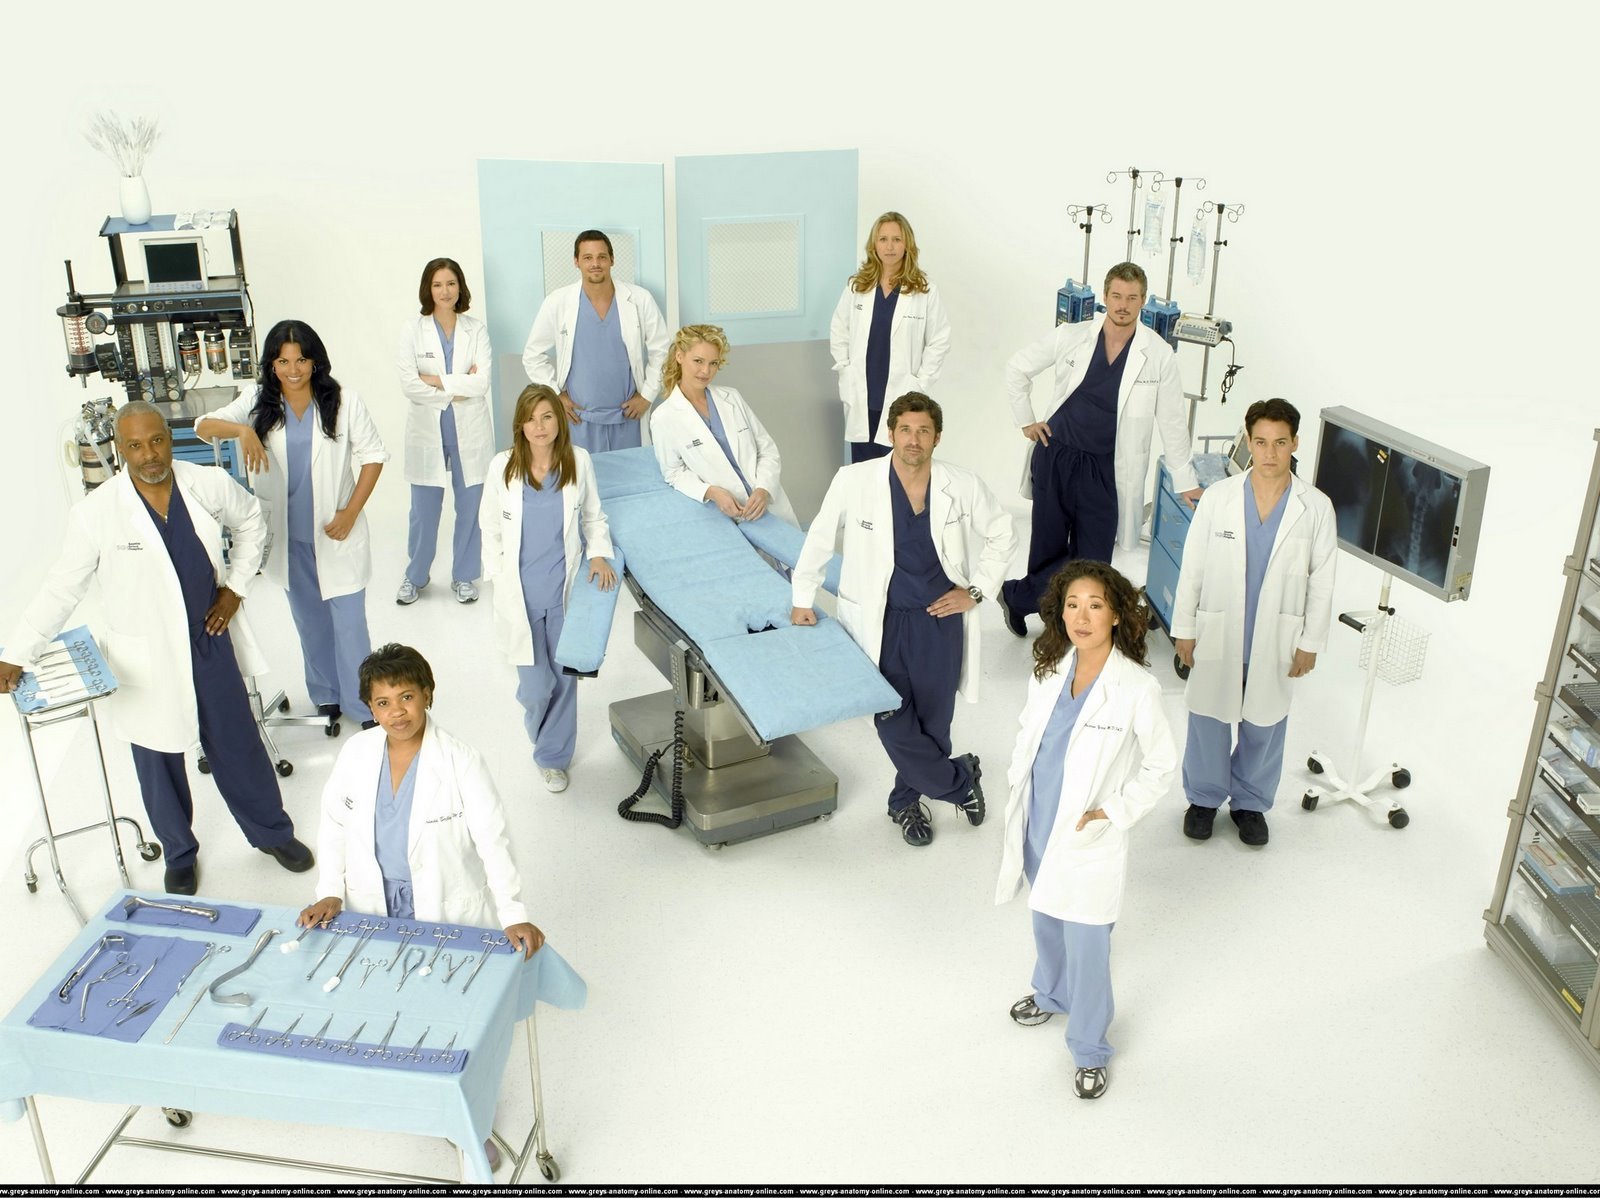 Grey's Anatomy TV Show: Cast of Grey's Anatomy1600 x 1198